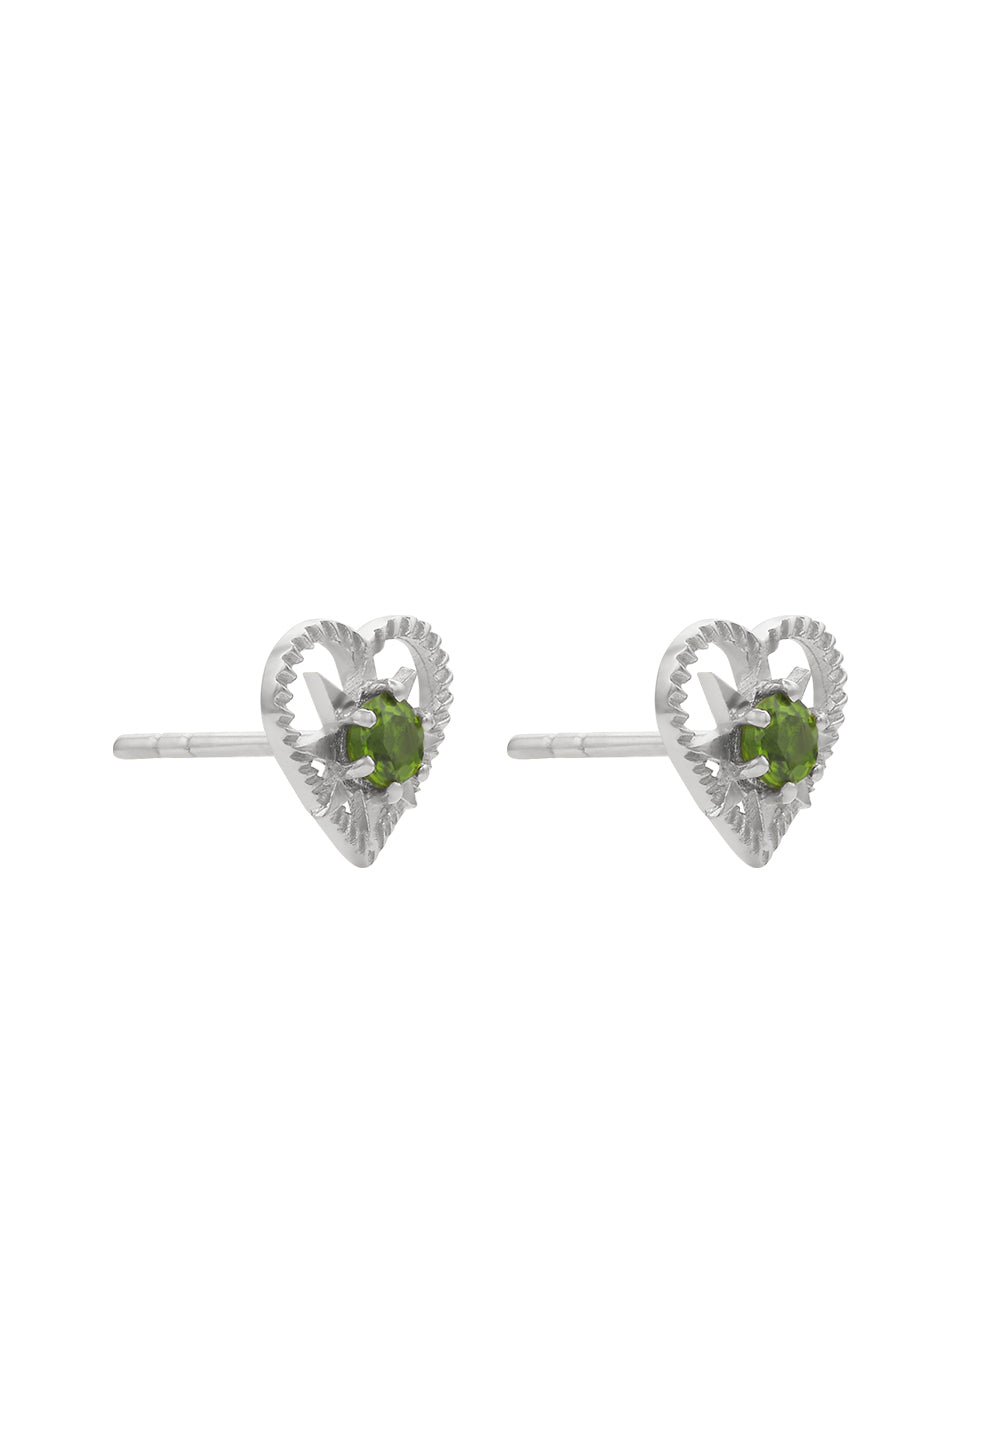 Kind Heart Earrings sold by Angel Divine